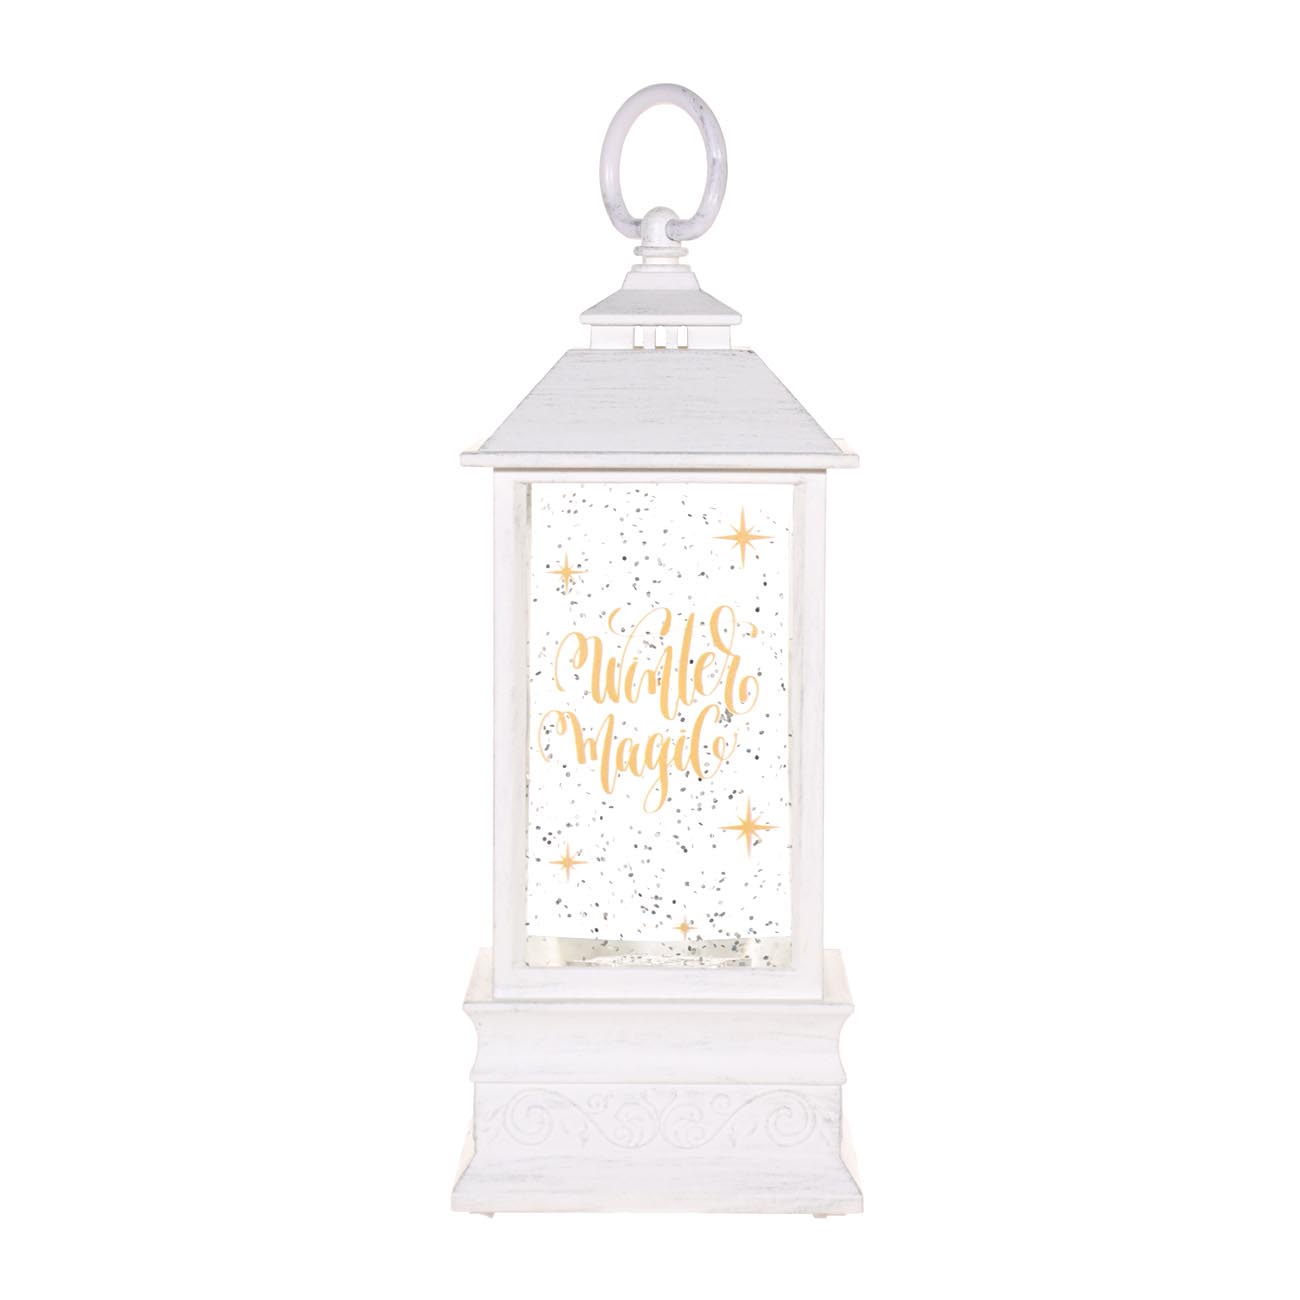 Снежный фонарь, 22 см, с подсветкой, пластик, белый, Winter magic, Winter style - фото 1